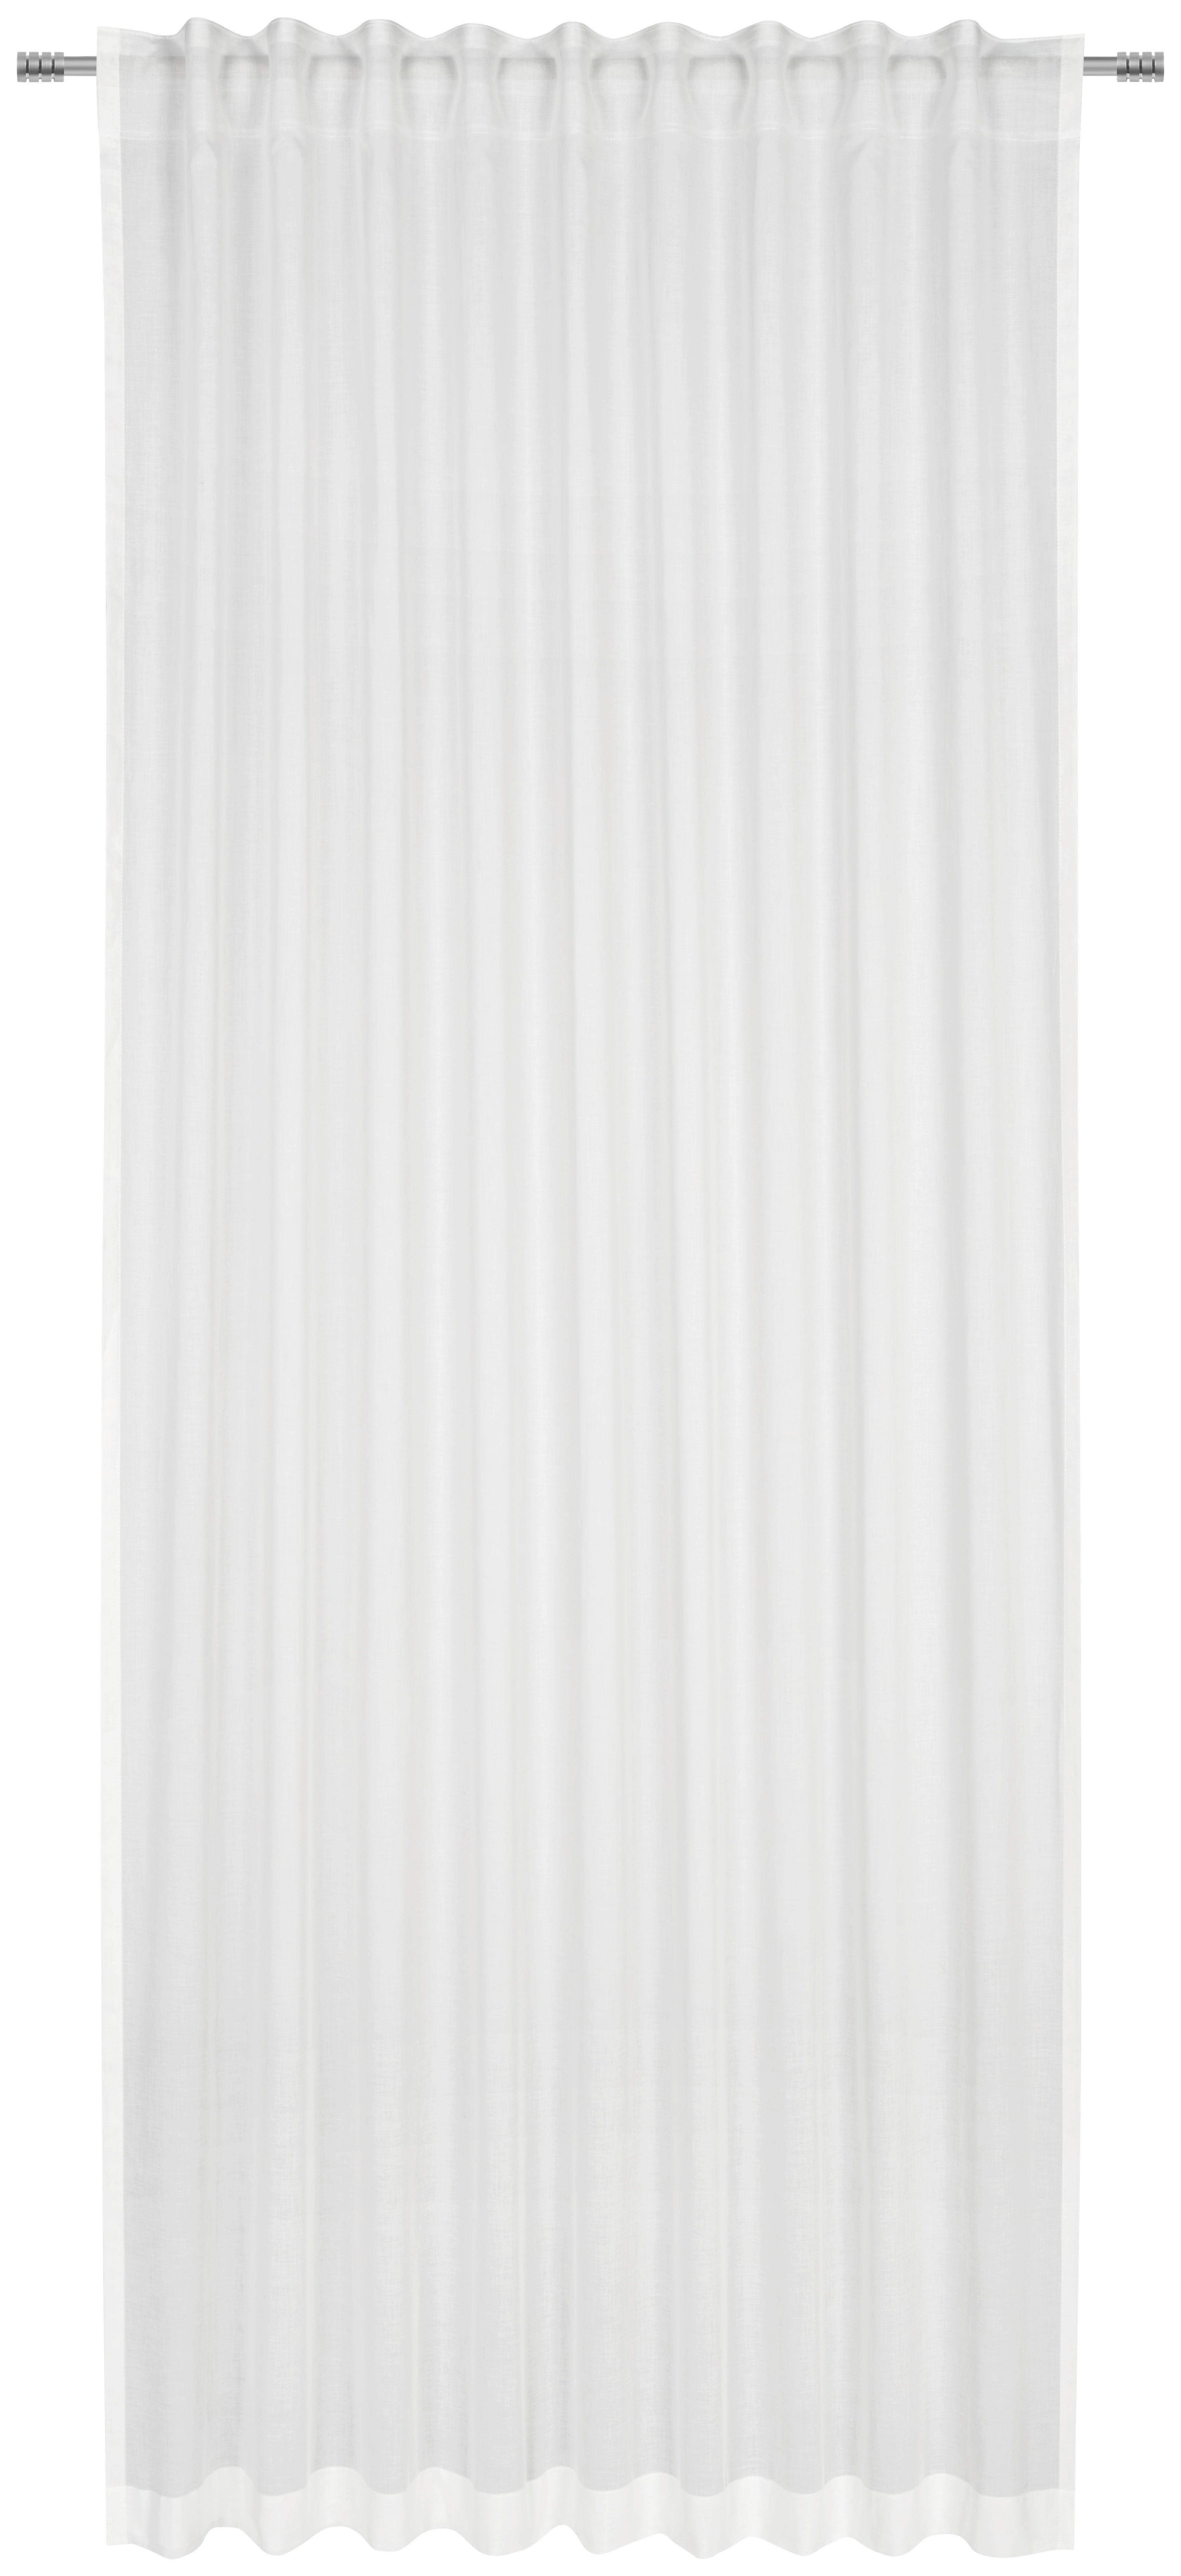 FERTIGVORHANG ELINA transparent 140/255 cm   - Weiß, Basics, Textil (140/255cm) - Bio:Vio